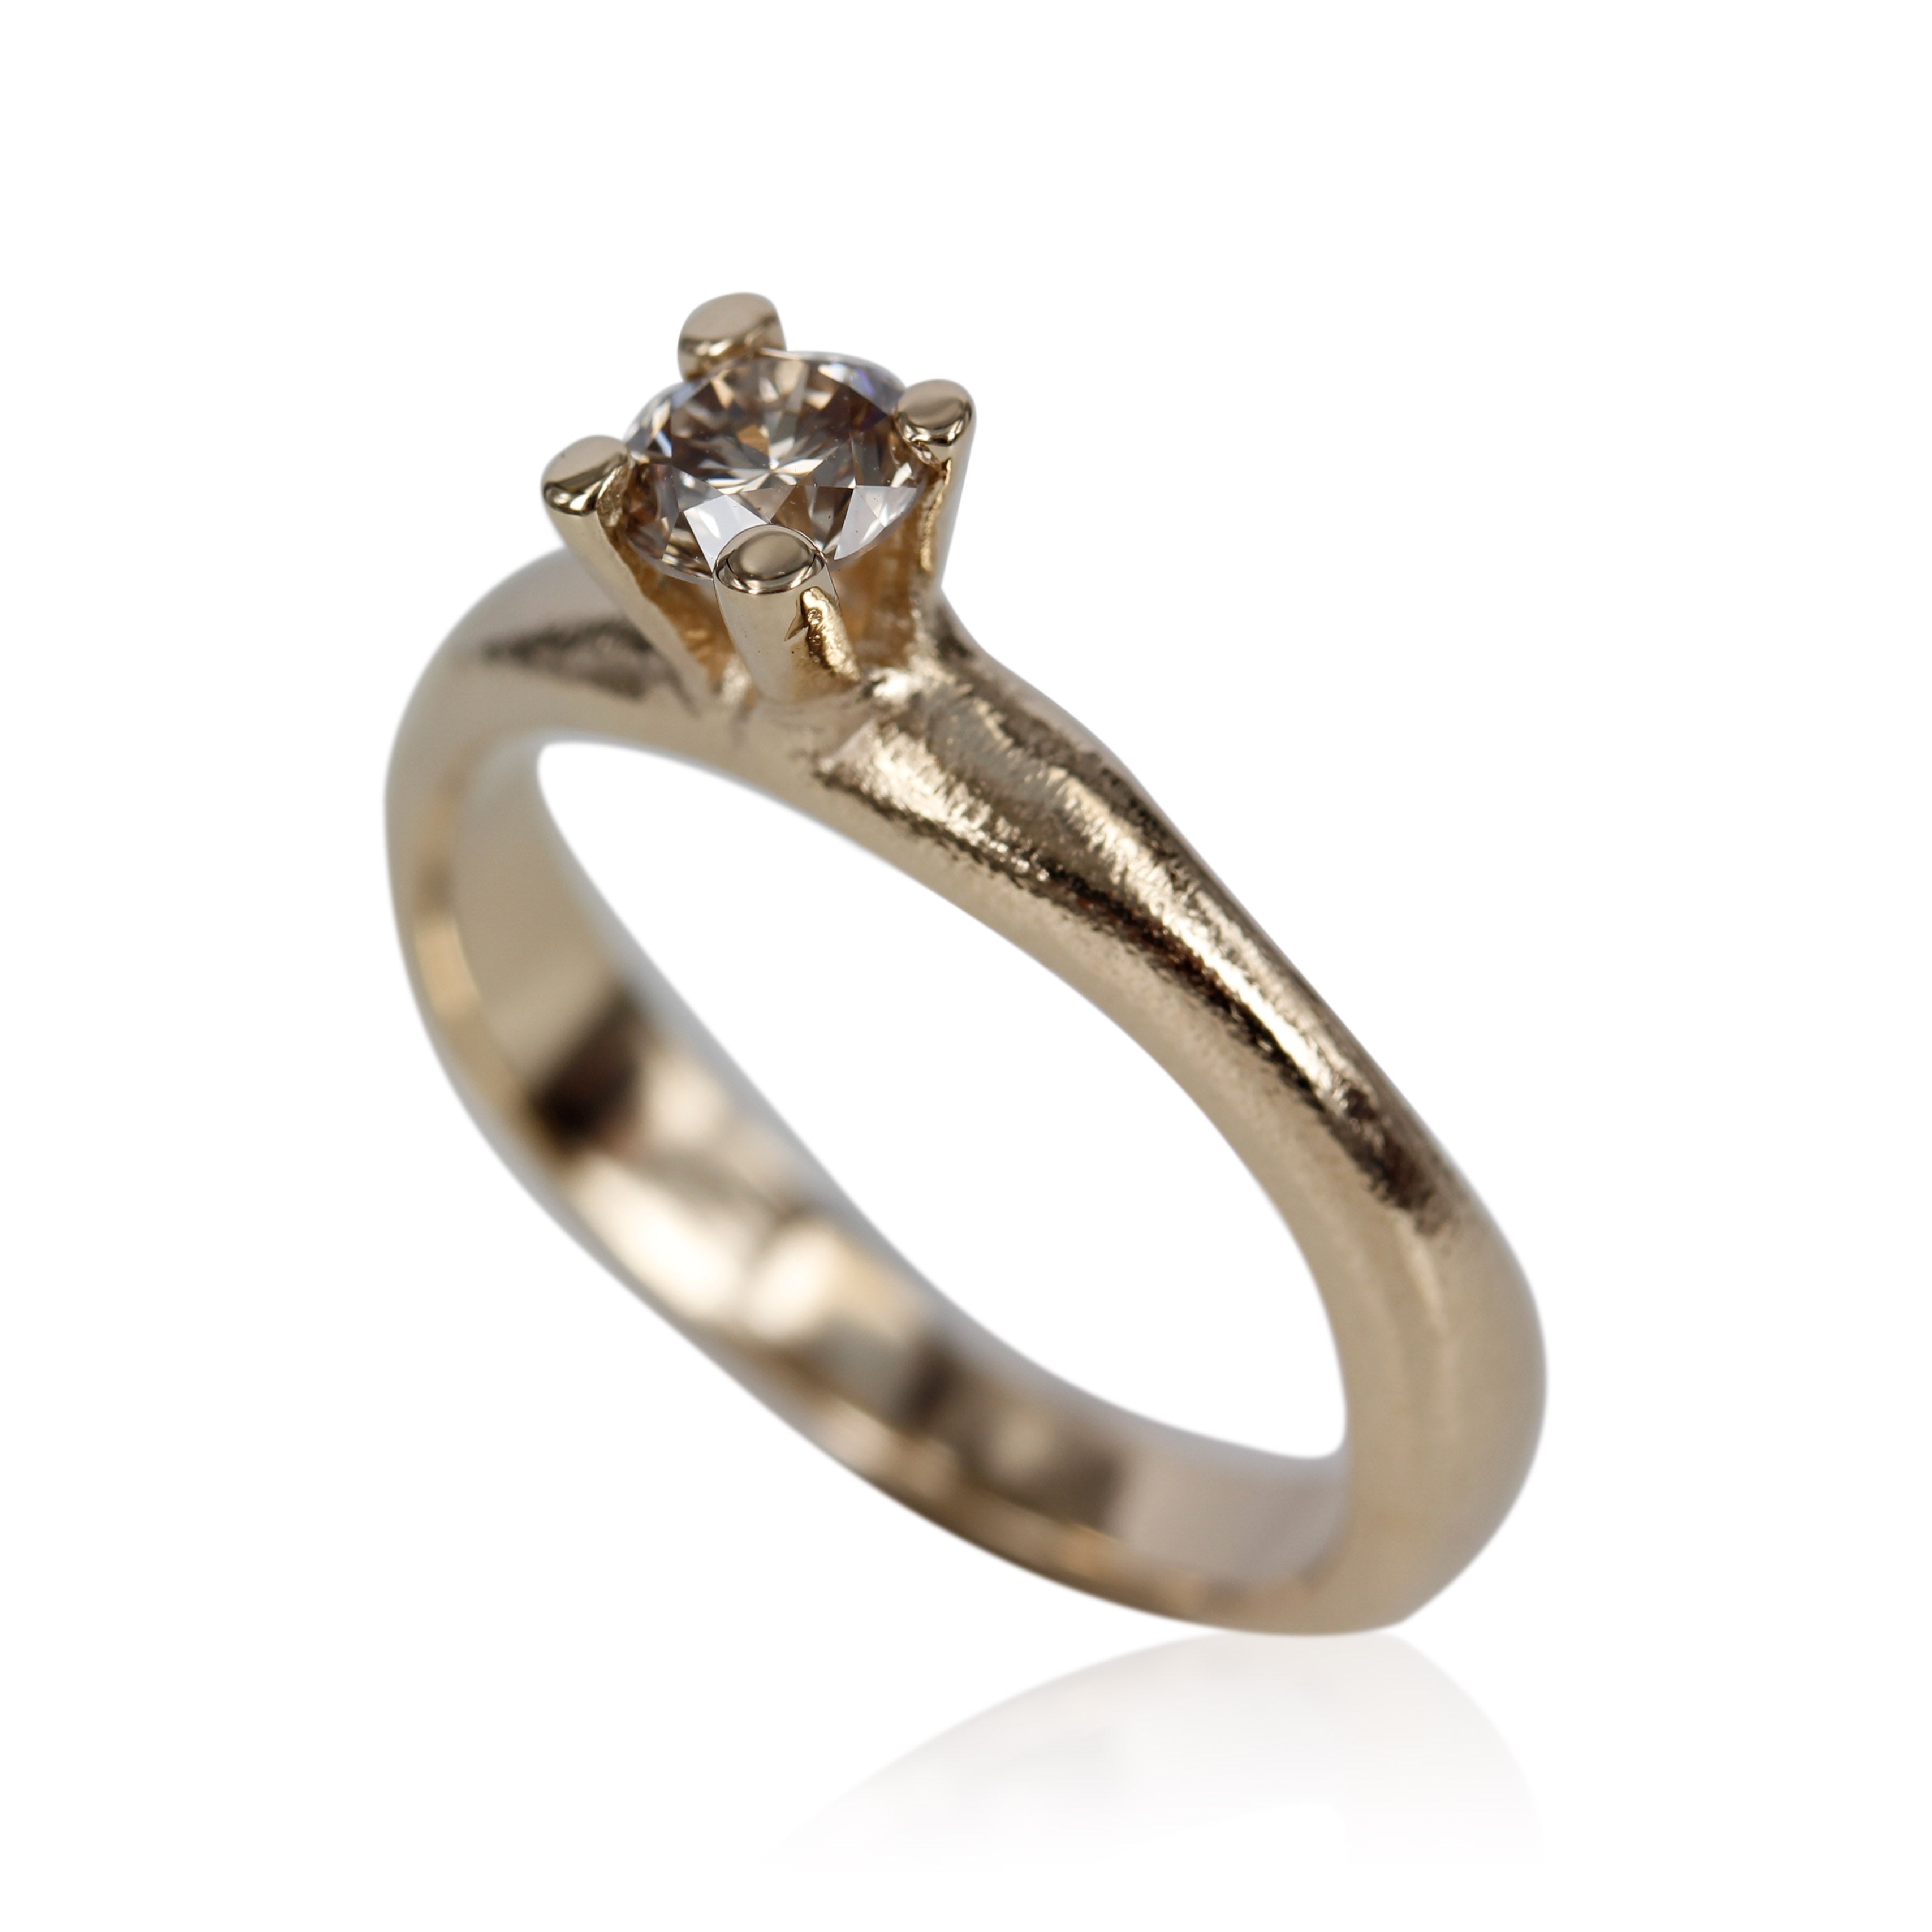 2, Organisk ring med rustik look, ringen er designet med tanke for den klassiske prinsessering med et tvist, isat 0.50 ct. champagne farver diamant. 